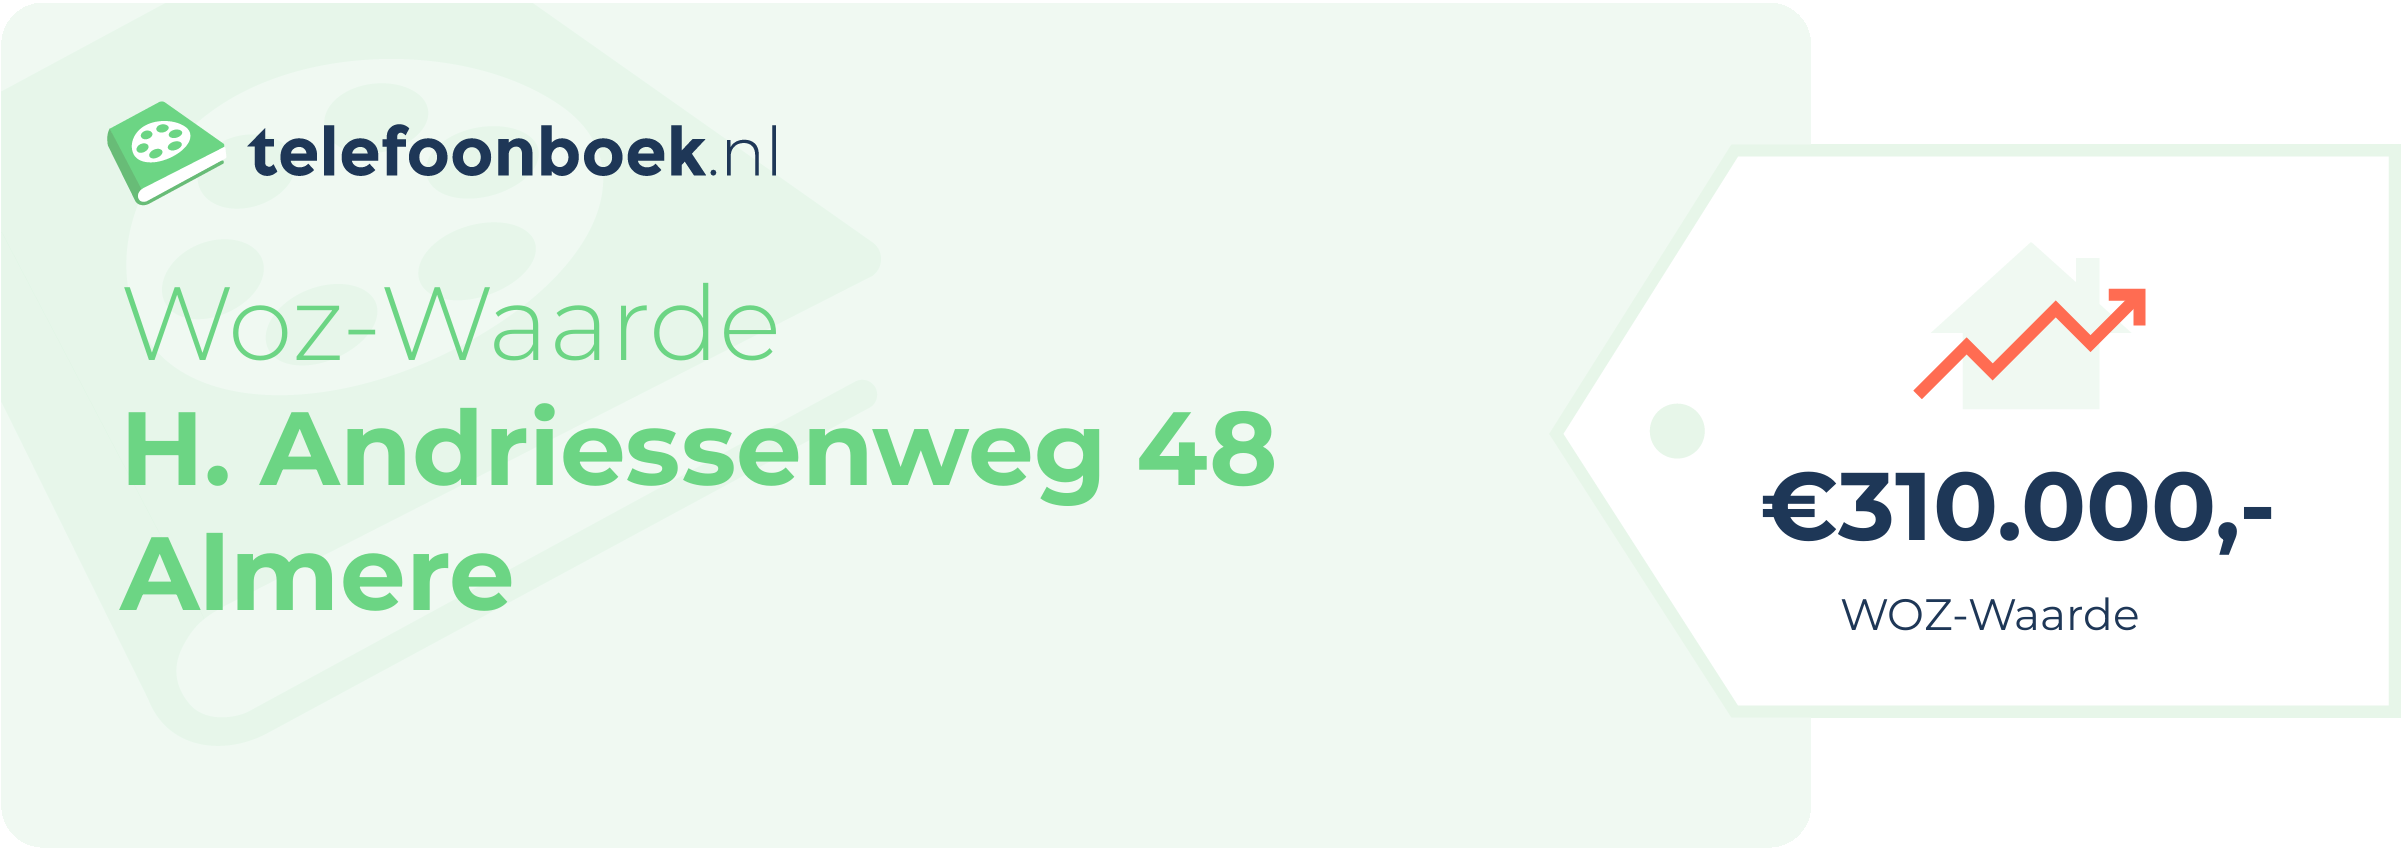 WOZ-waarde H. Andriessenweg 48 Almere